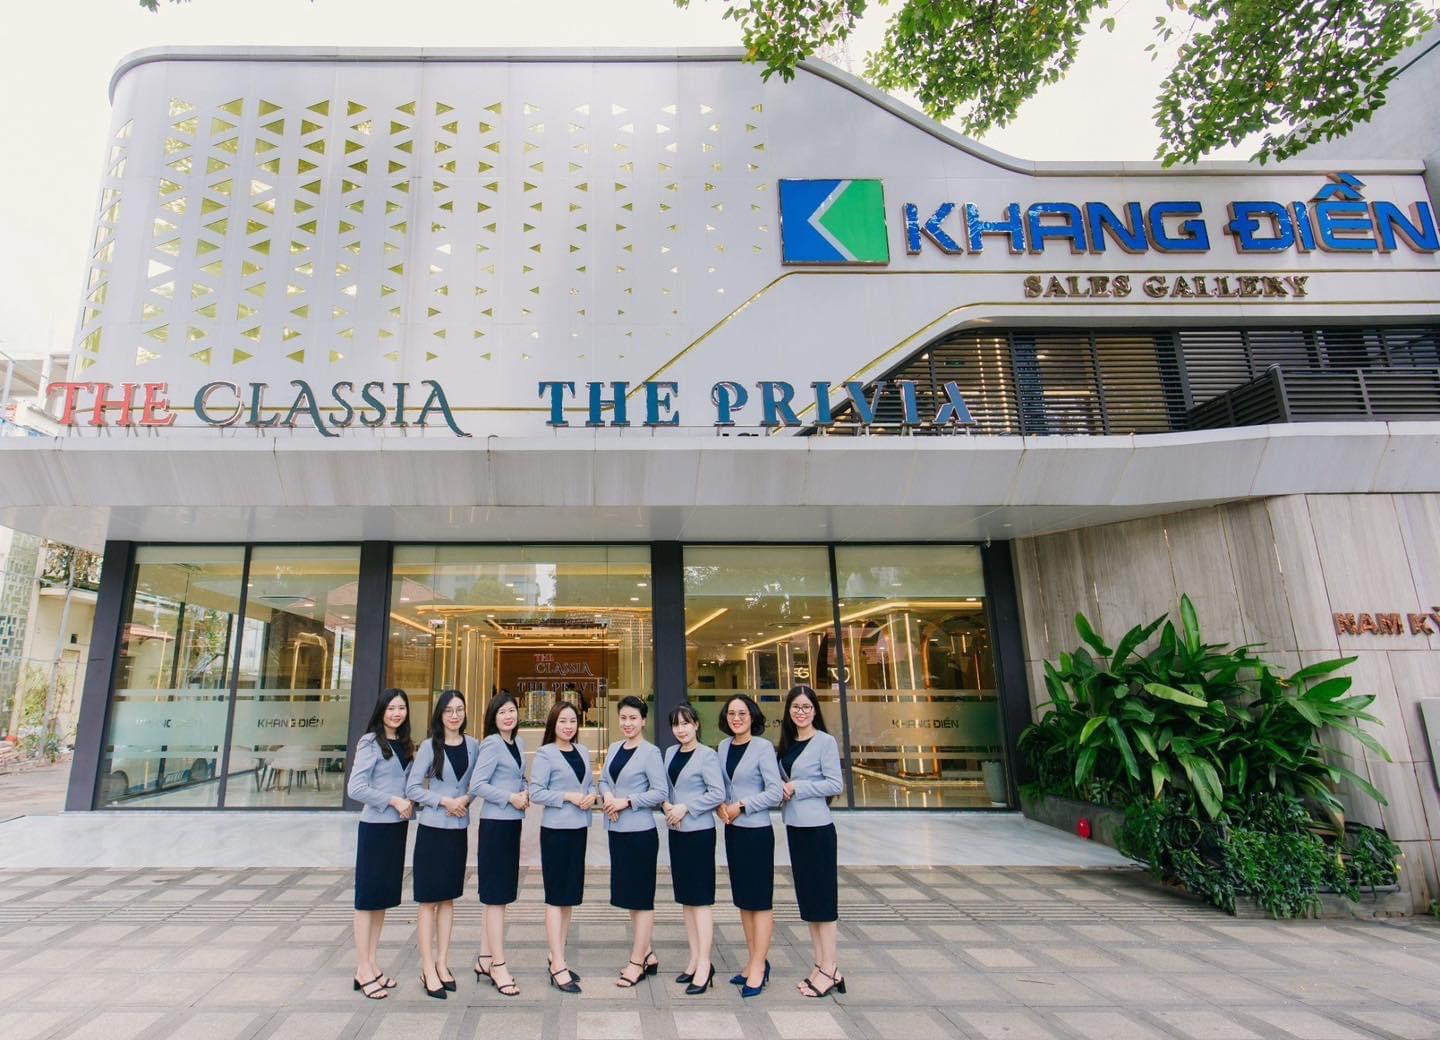 Văn phòng bán hàng và nhà mẫu dự án căn hộ The Privia Khang Điền Bình Tân tọa lạc tại 208 Nam Kỳ Khởi Nghĩa Quận 3 HCM